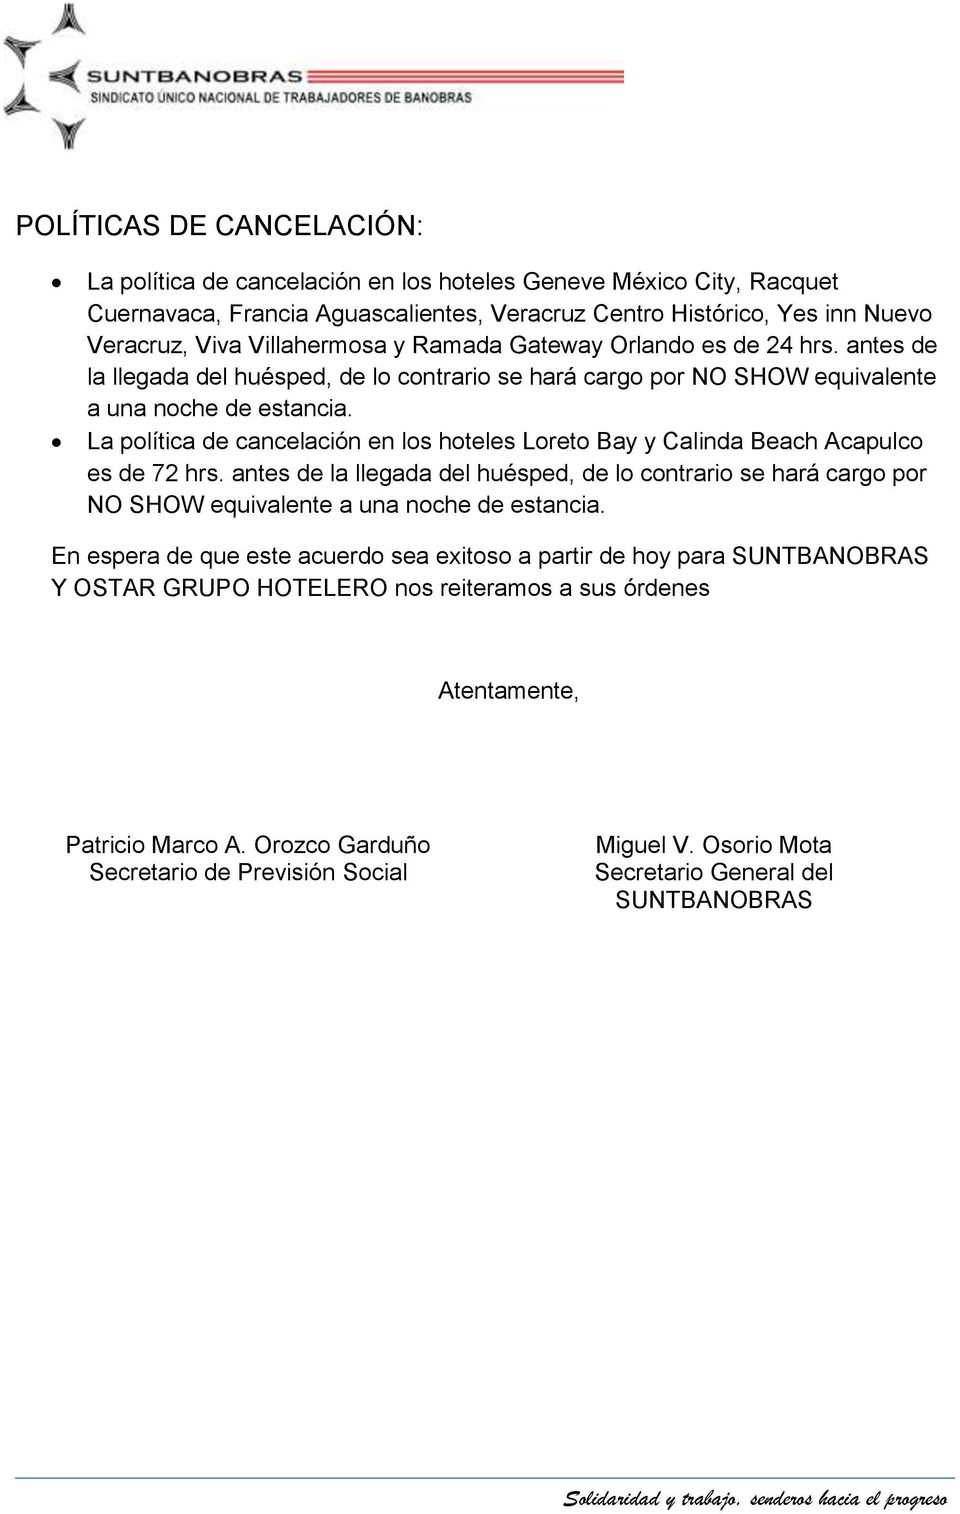 La política de cancelación en los hoteles Loreto Bay y Calinda Beach capulco es de 72 hrs.